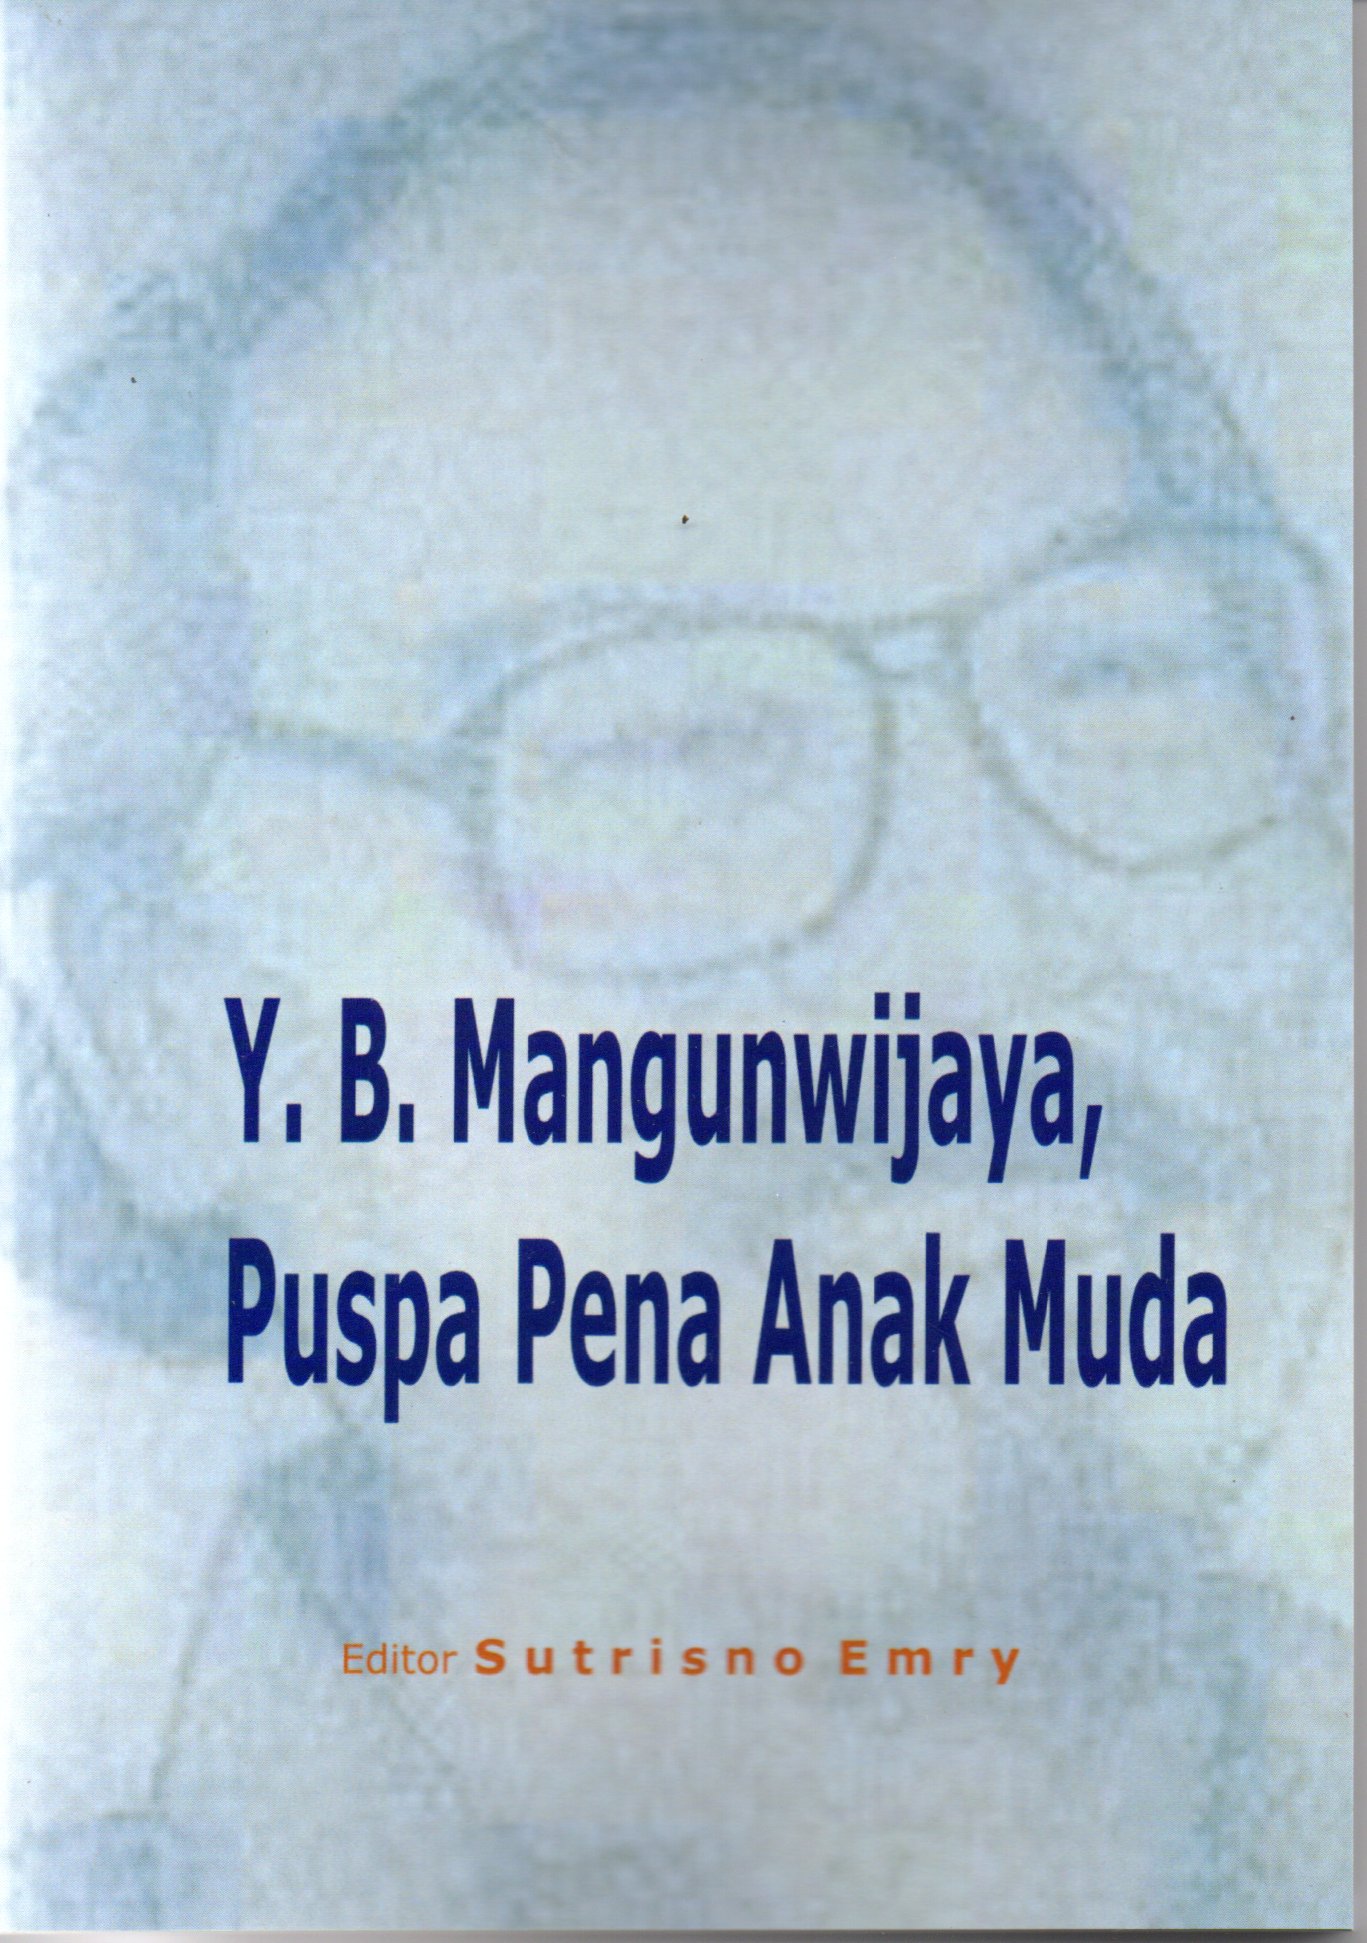 Y.B. Mangunwijaya, puspa pena anak muda/editor Sutrisno Emry